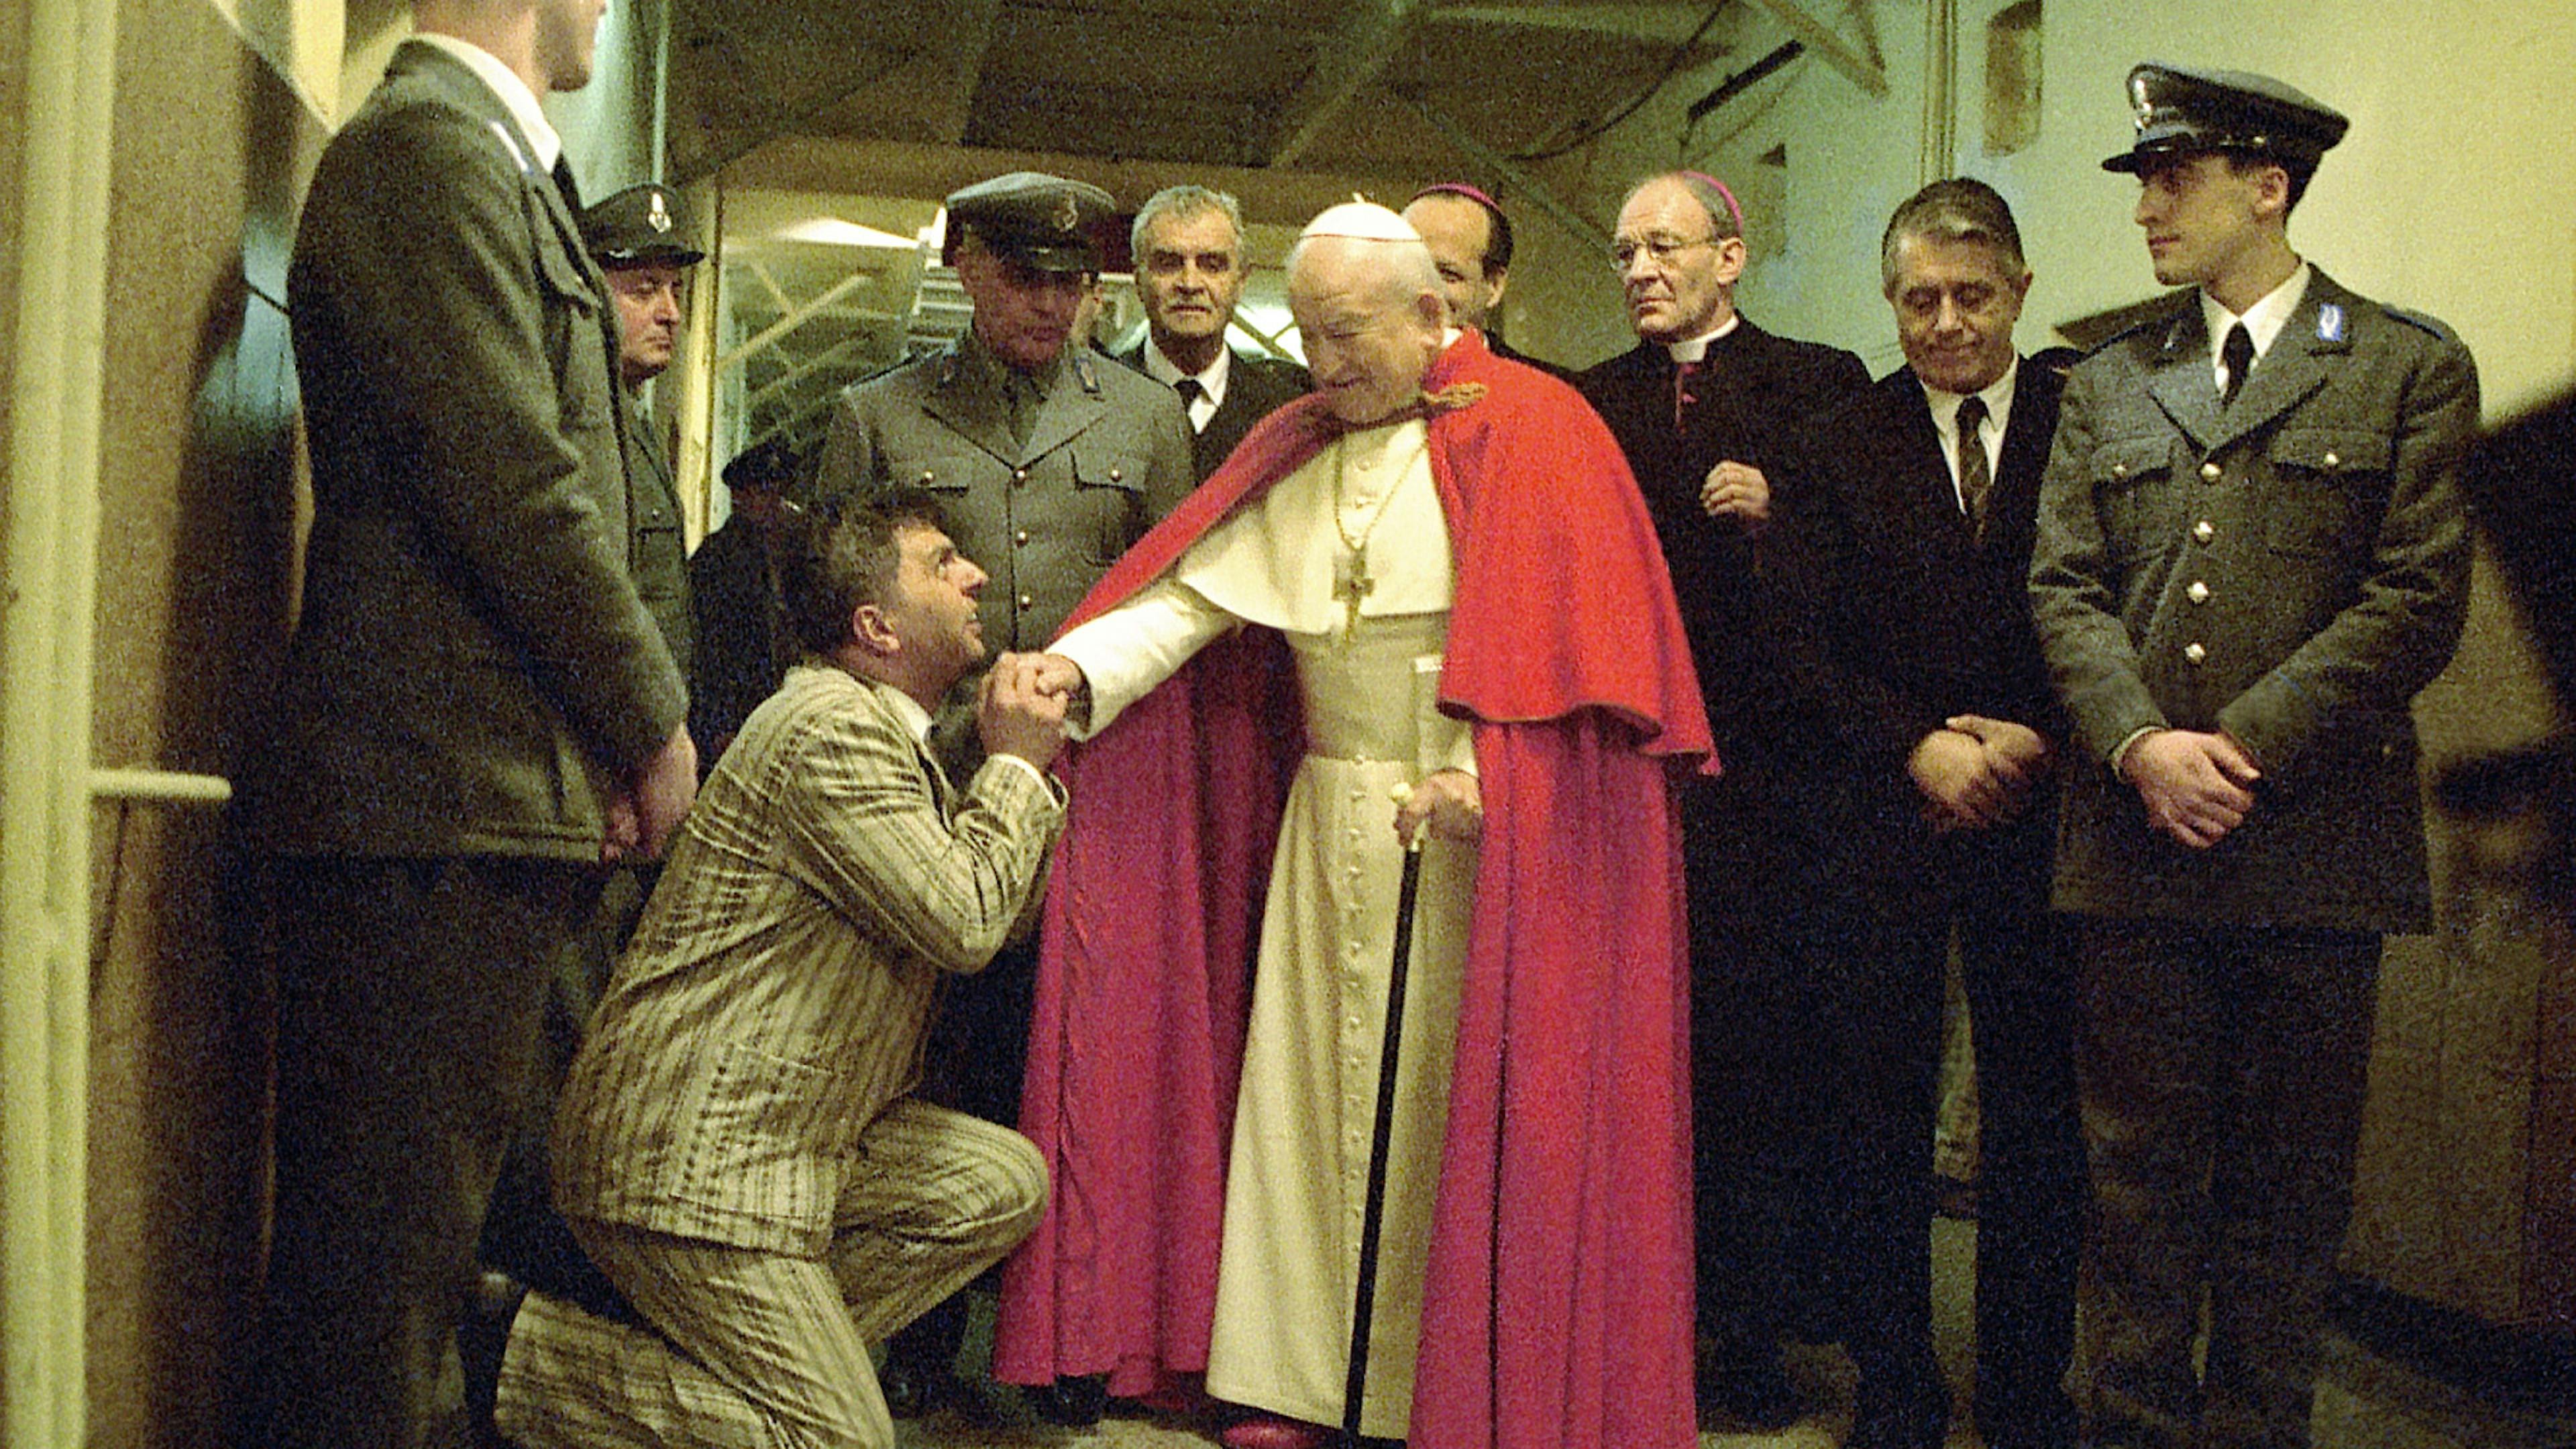 Ein Leben für den Frieden - Papst Johannes XXIII (2/2)